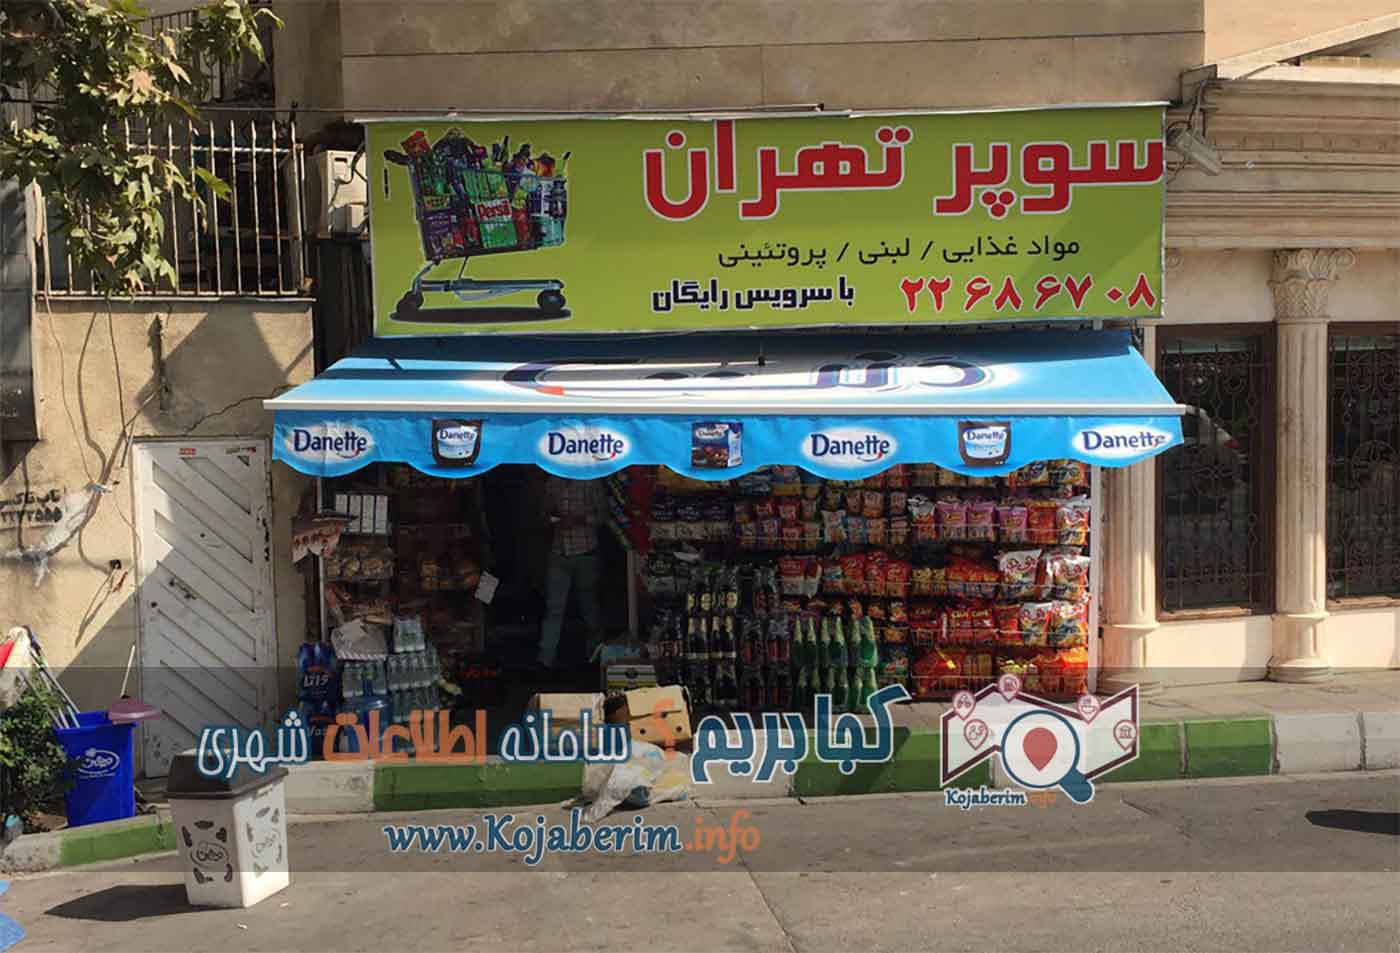 سوپرمارکت تهران نبش کوچه احمدی در بلوار اندرزگو